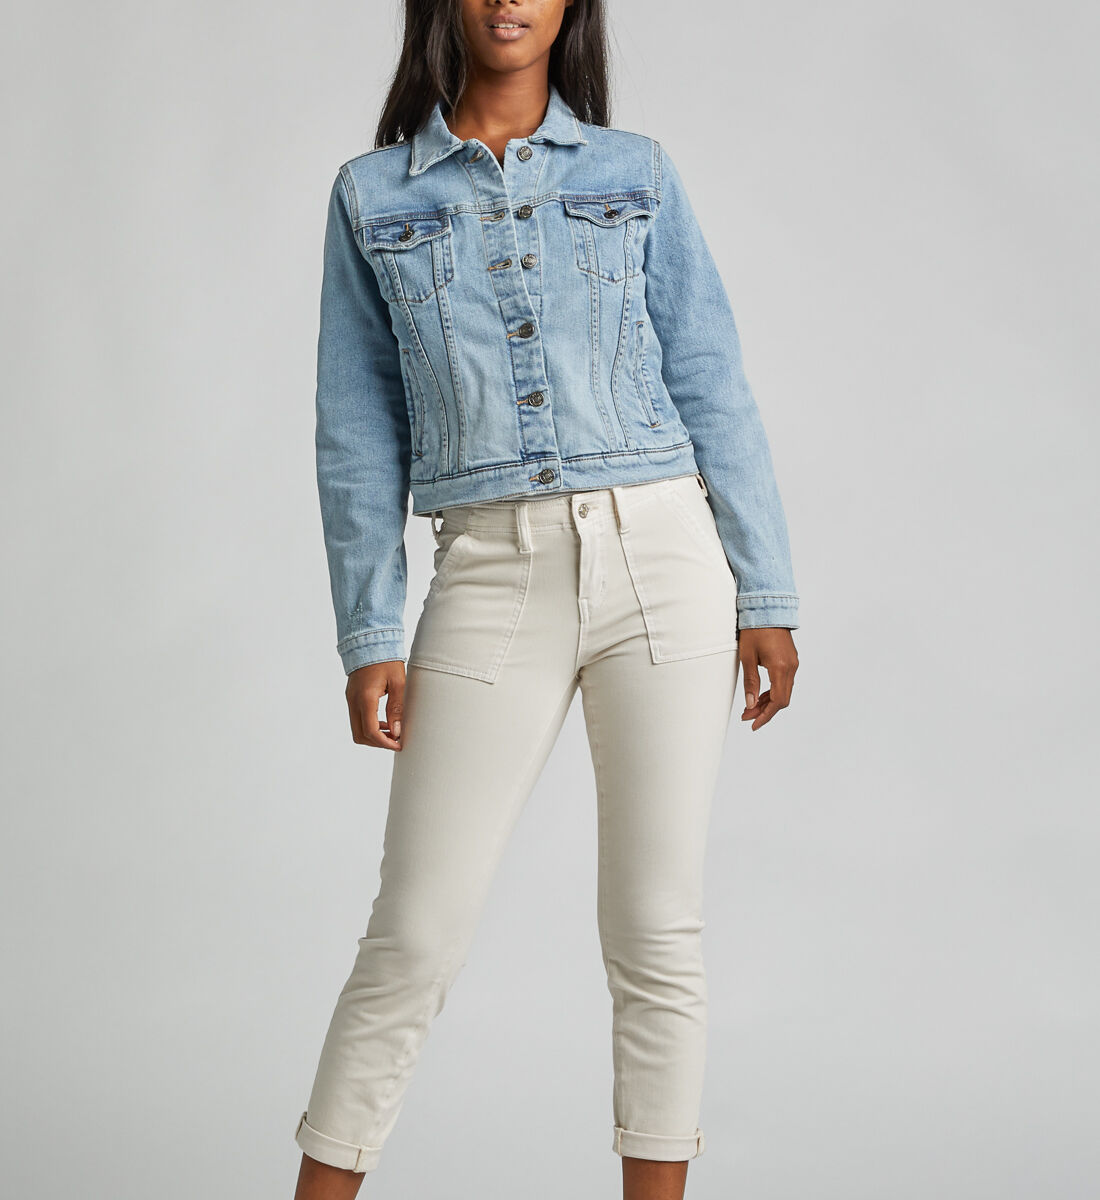 Silver Jeans Womens Jean Jacket 